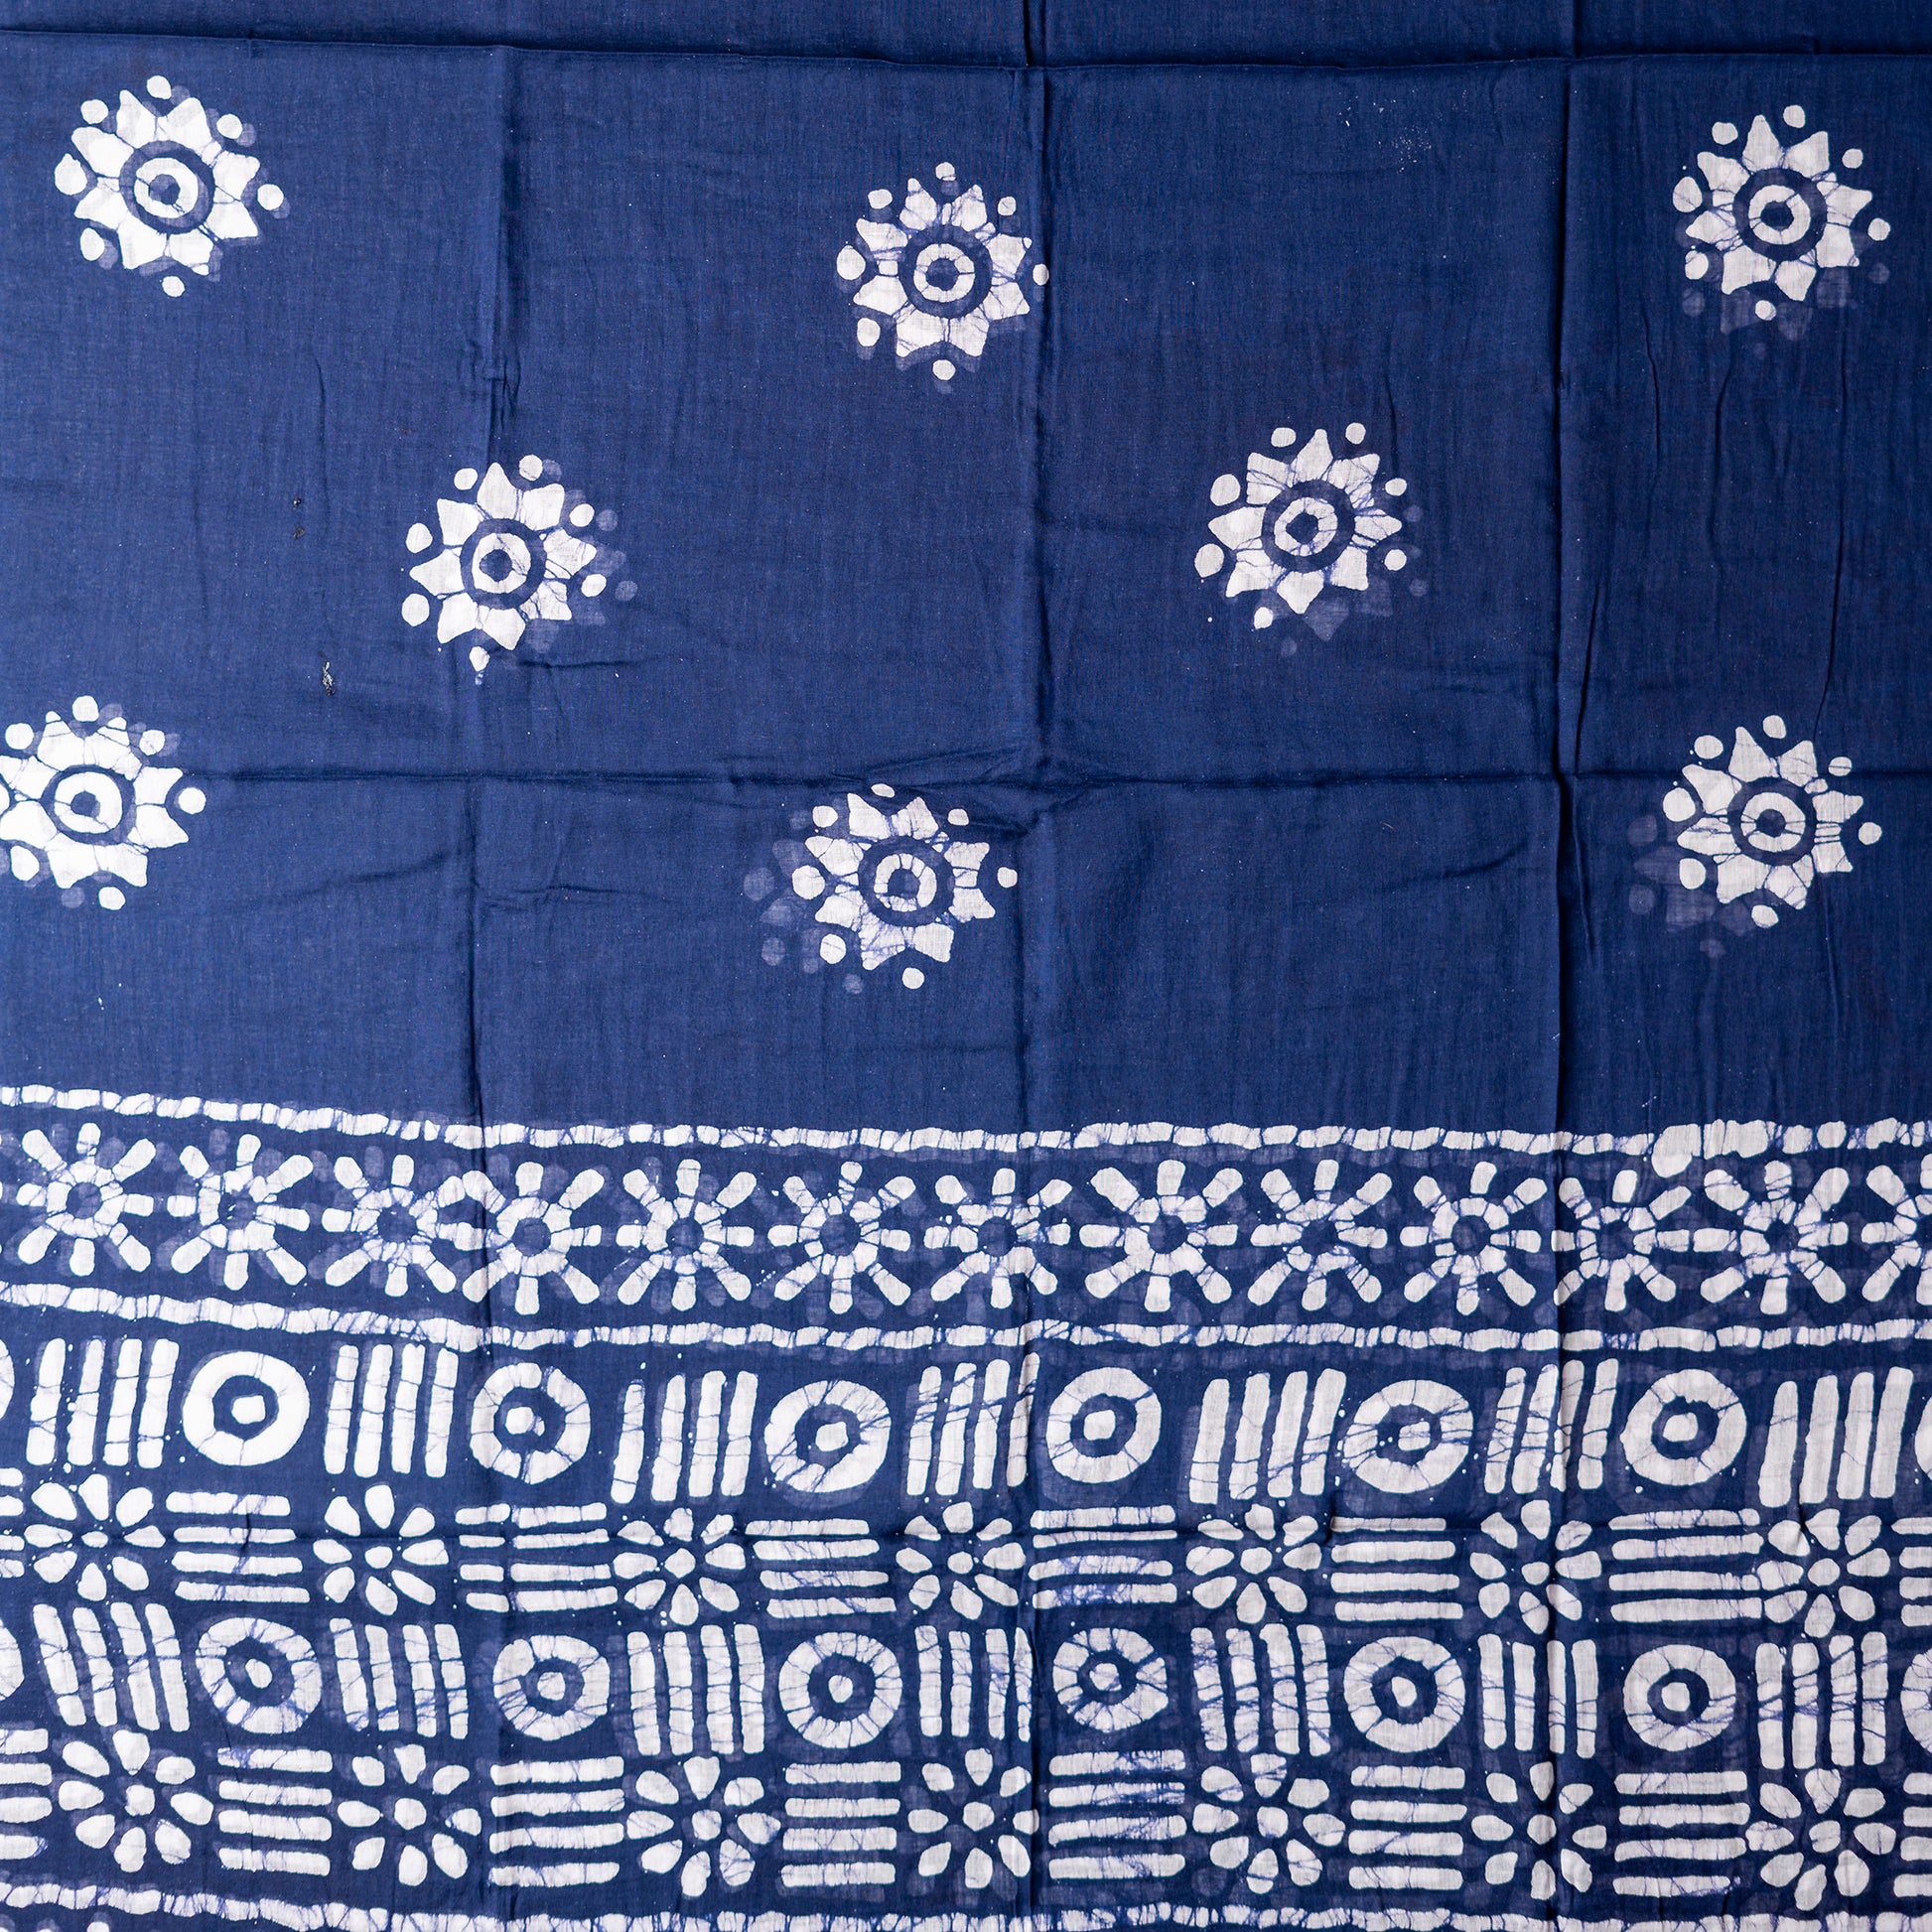 blue color mul cotton dupatta with print designs. 